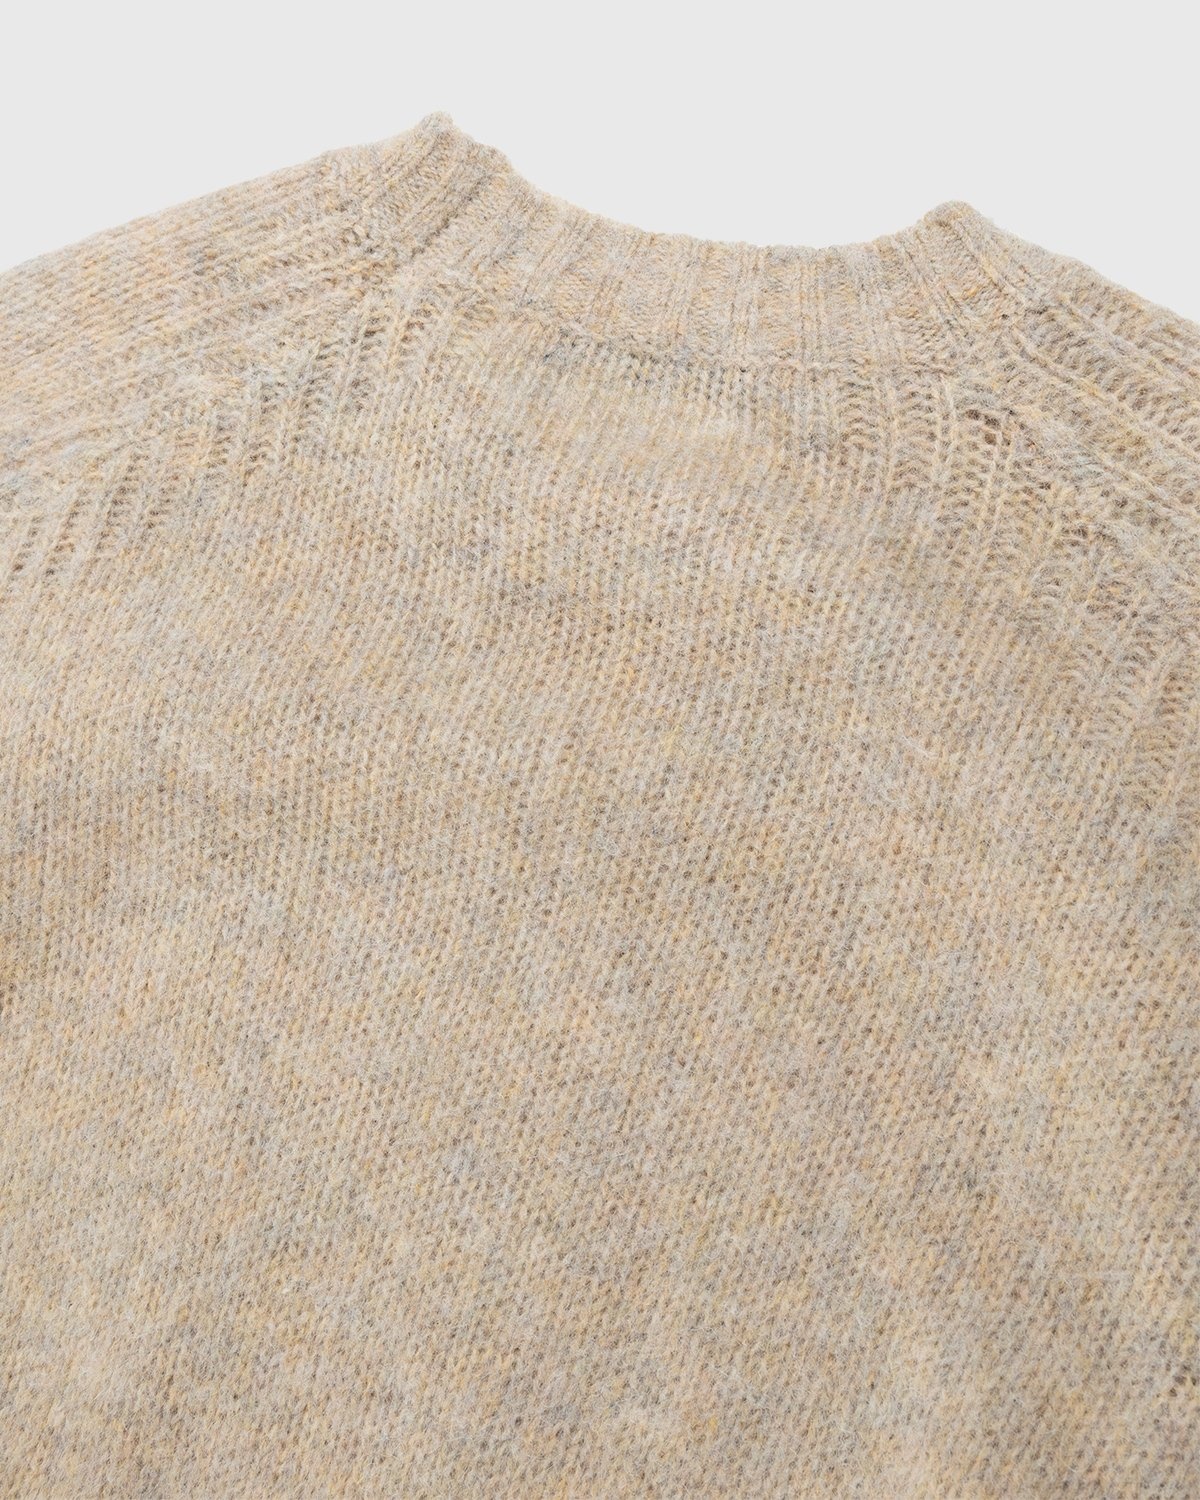 Acne Studios – Brushed Wool Crewneck Sweater Toffee Brown - Knitwear - Brown - Image 5